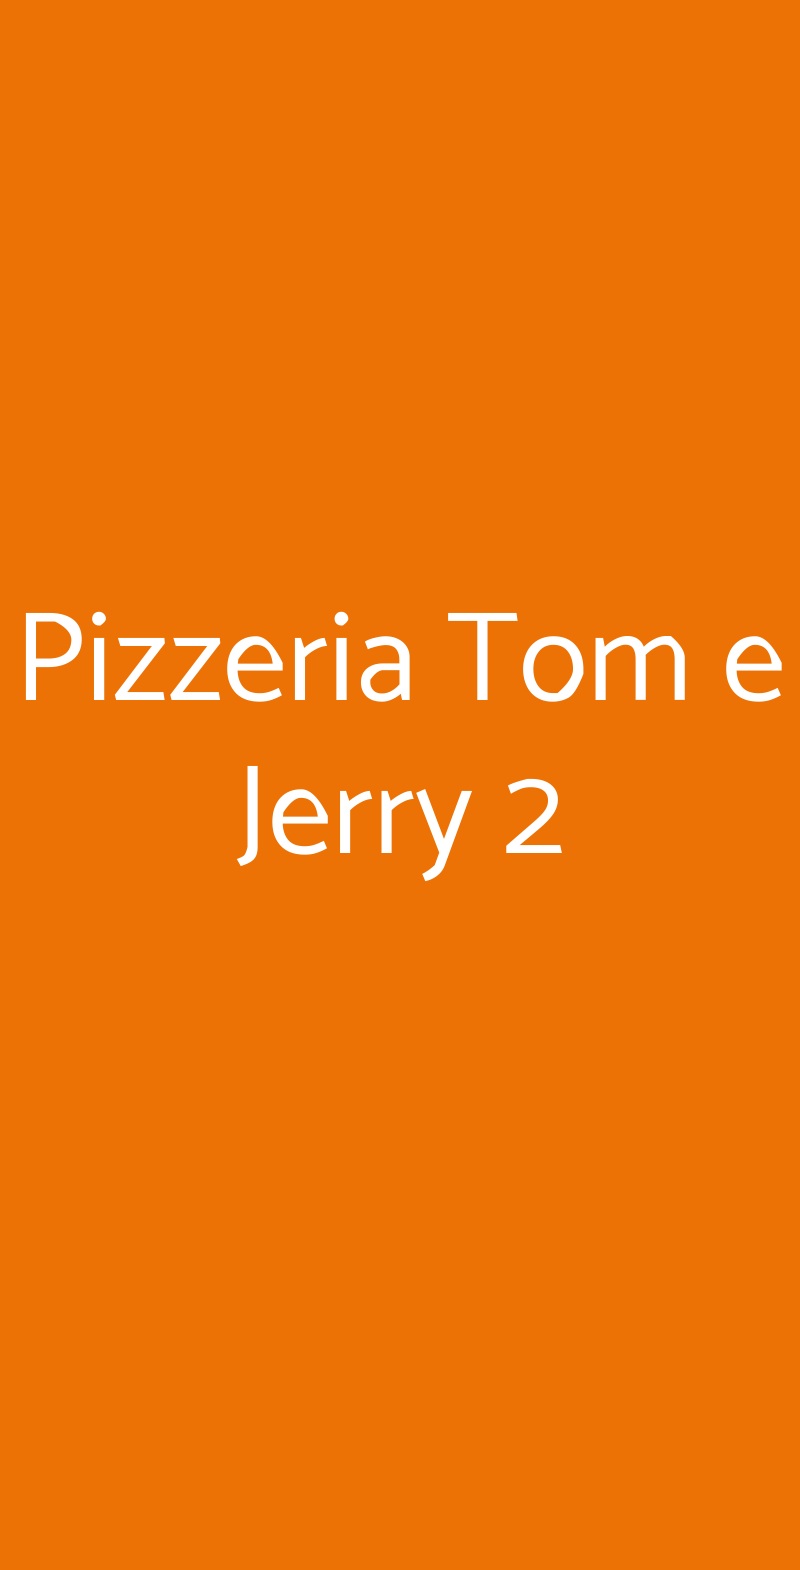 Pizzeria Tom e Jerry 2 Sesto San Giovanni menù 1 pagina